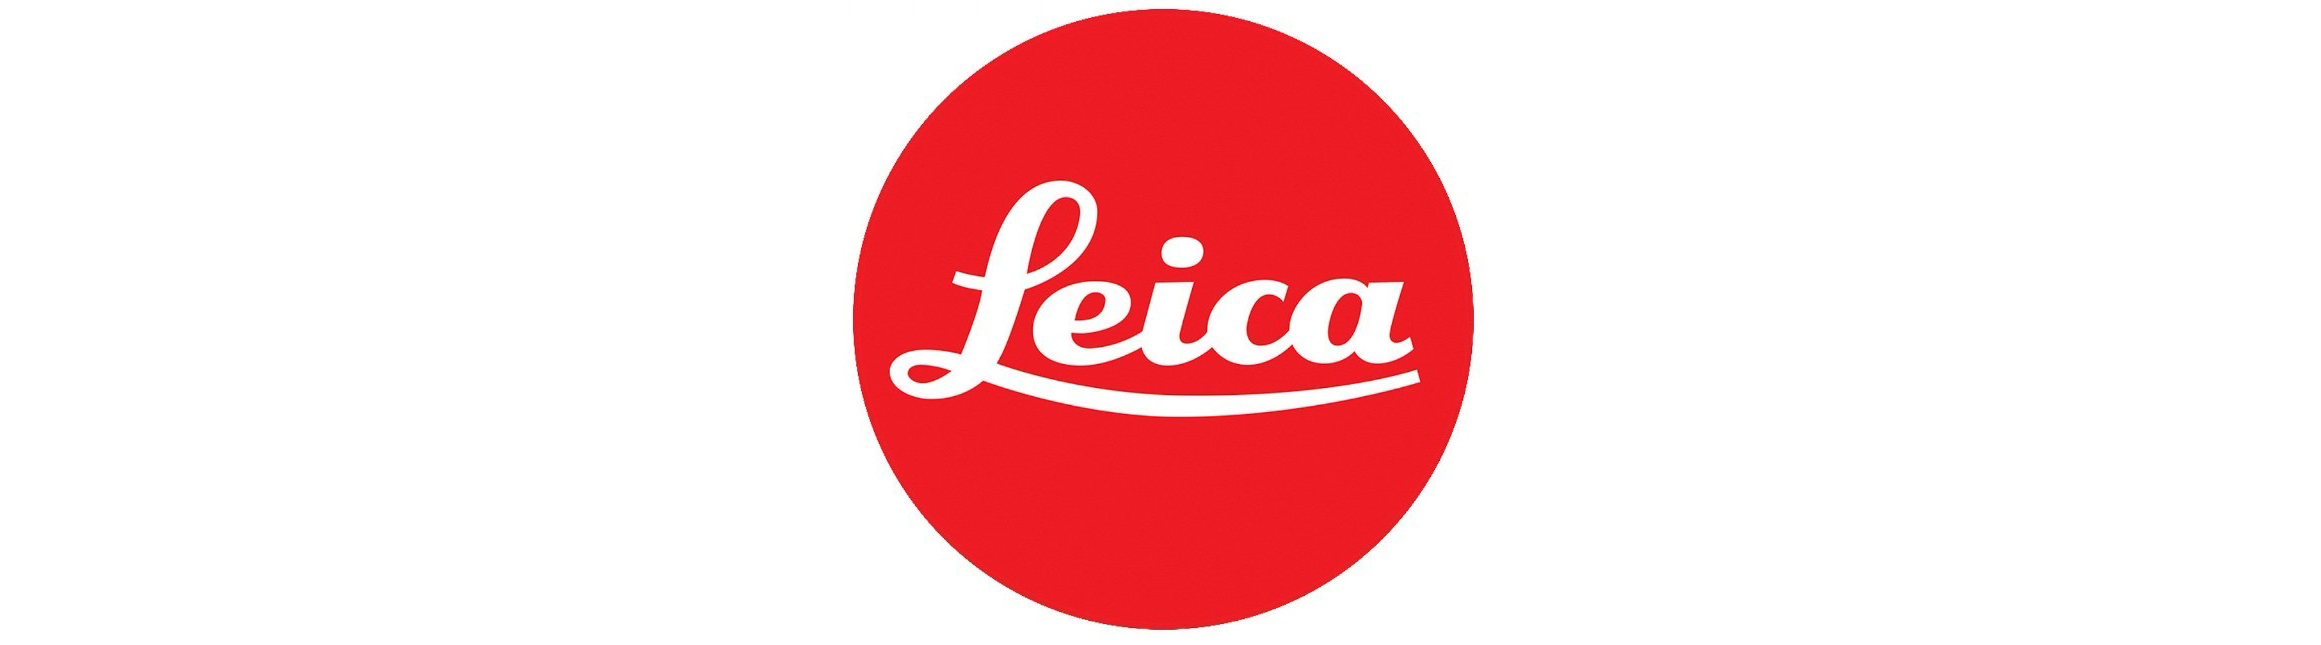 徕卡|Leica